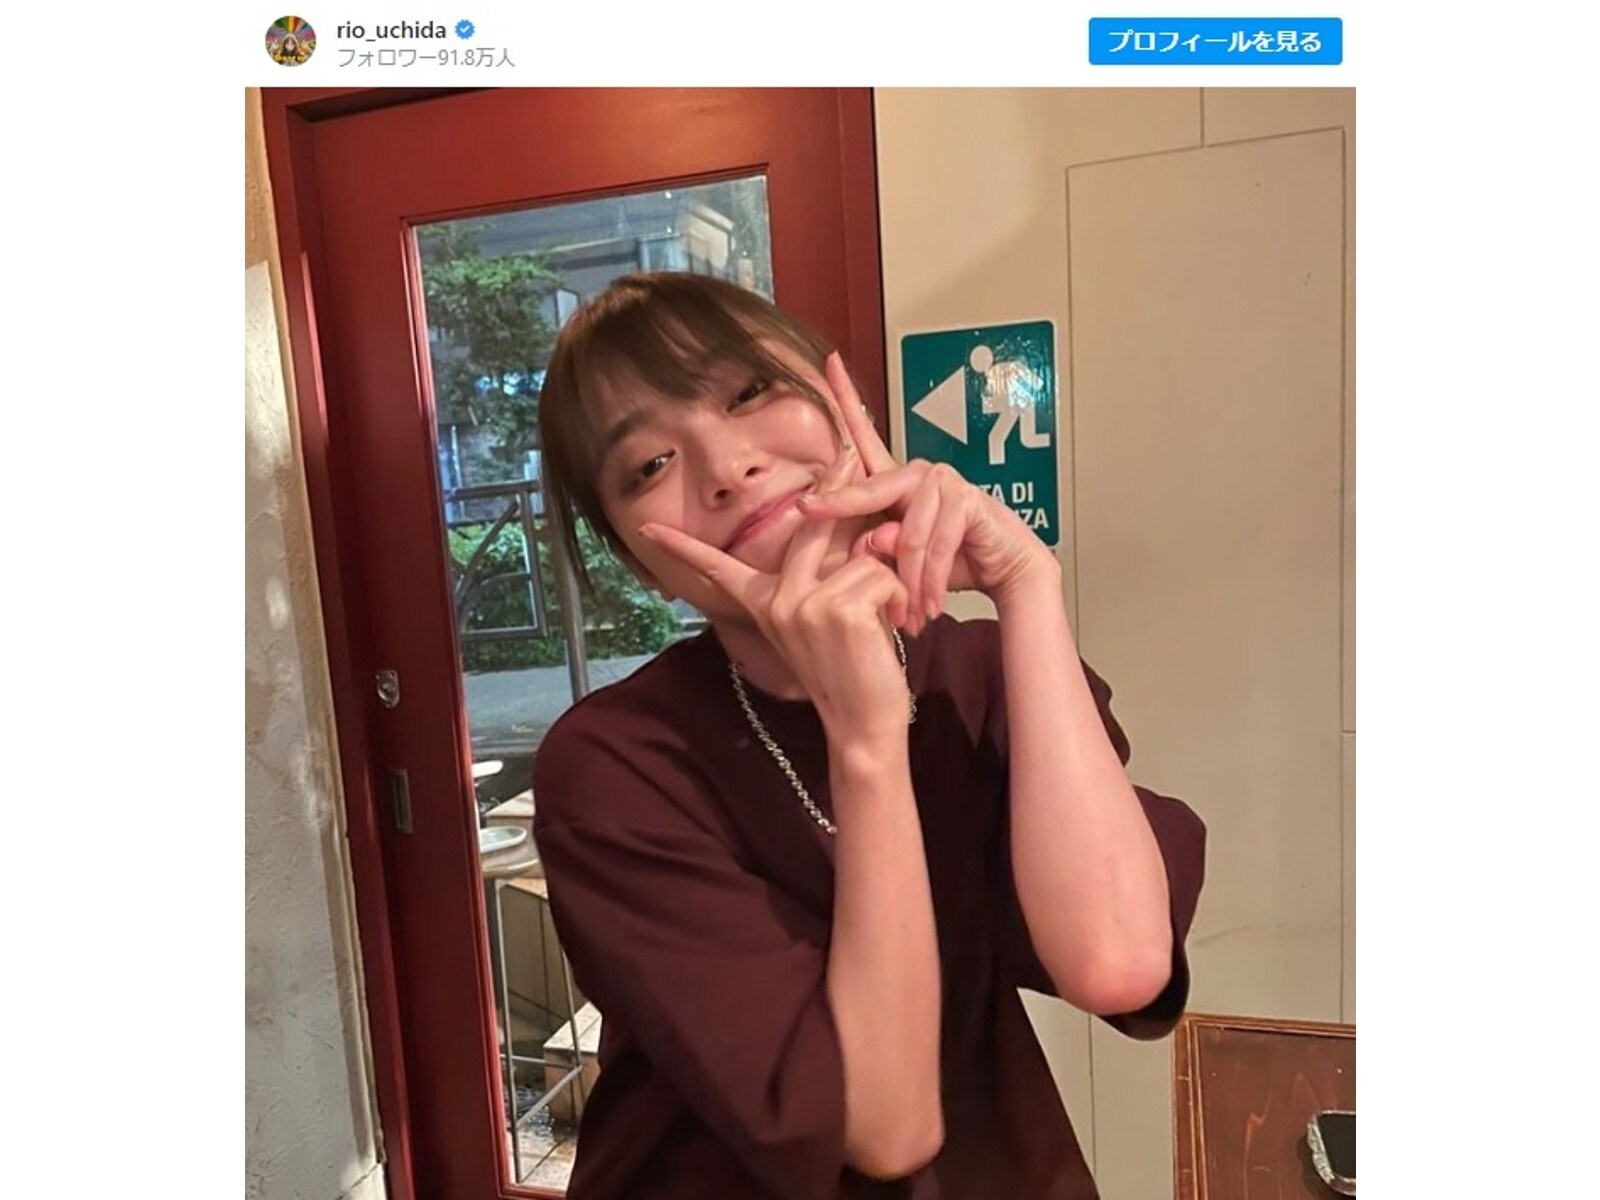 内田理央、ほろ酔い状態で謎のポーズをする写真公開！ 「もうなんのポーズか分かんねぇけど可愛いよ」